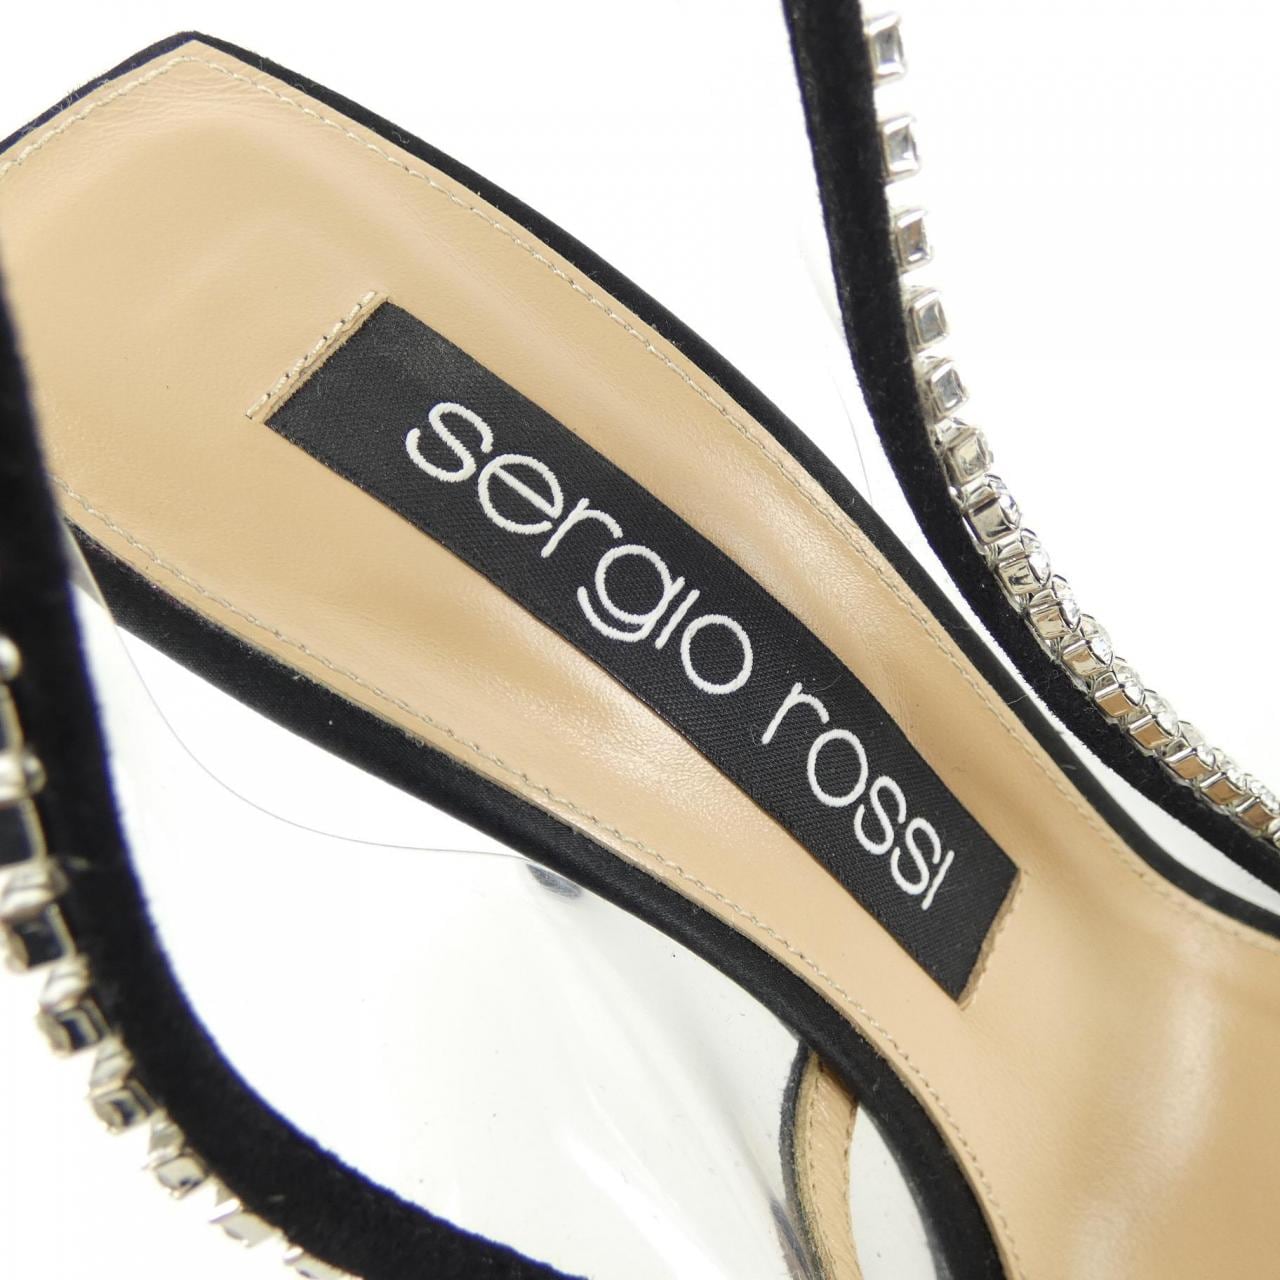 sergio rossi塞爾吉奧·羅西 鞋